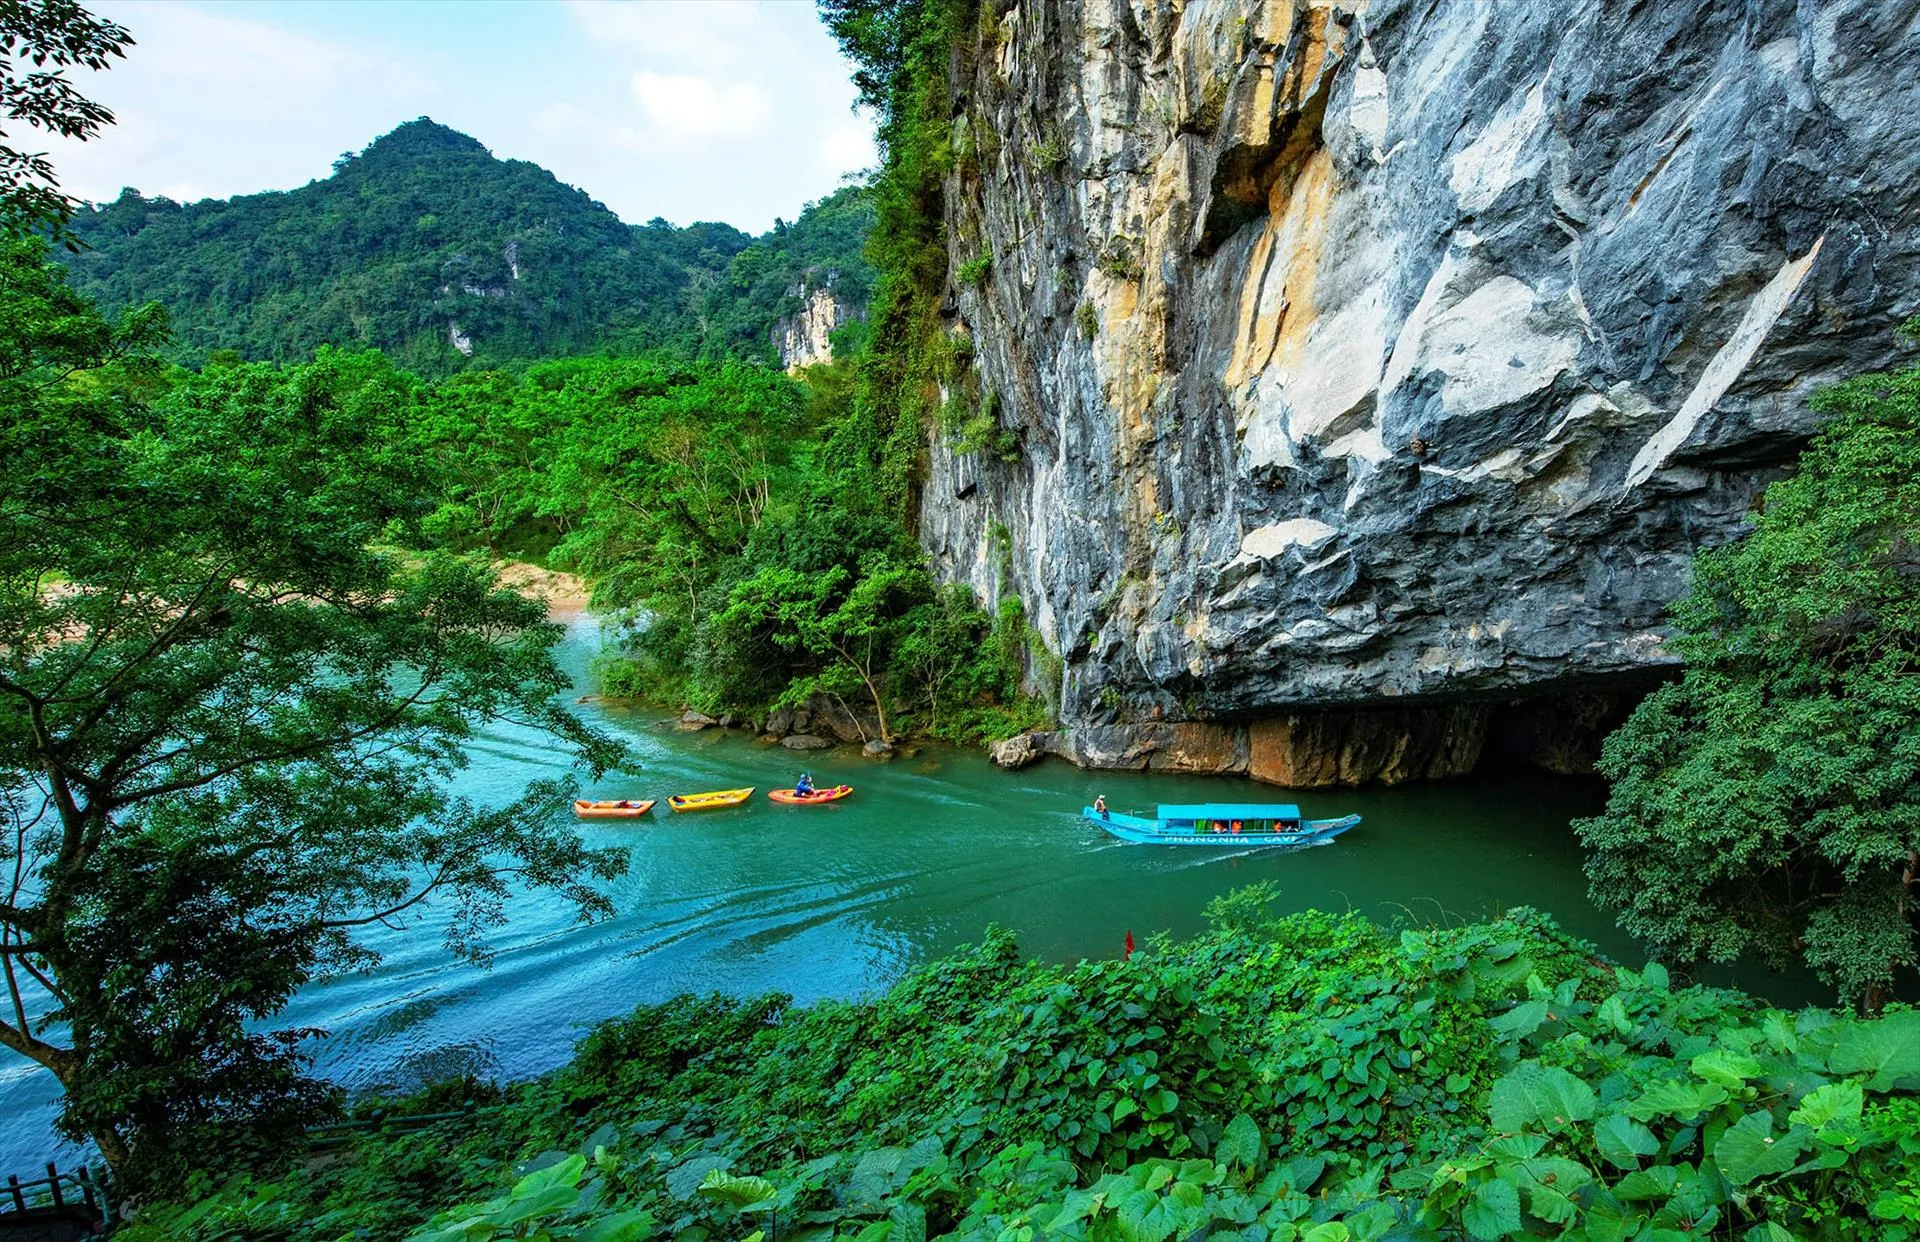 Khám phá thiên nhiên kỳ bí, hùng vĩ ở vườn quốc gia Phong Nha - Kẻ Bàng 